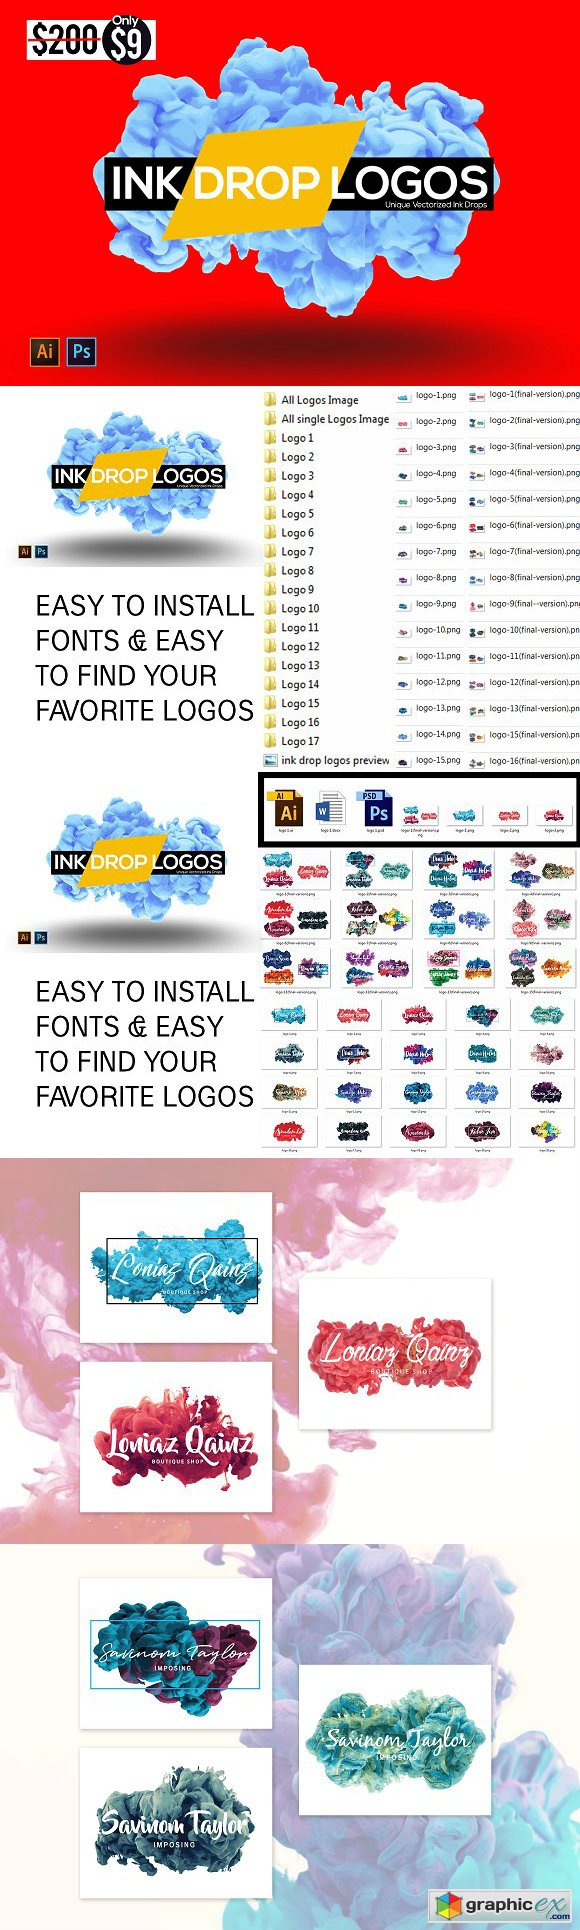 Ink Drop Logos Branding Kit